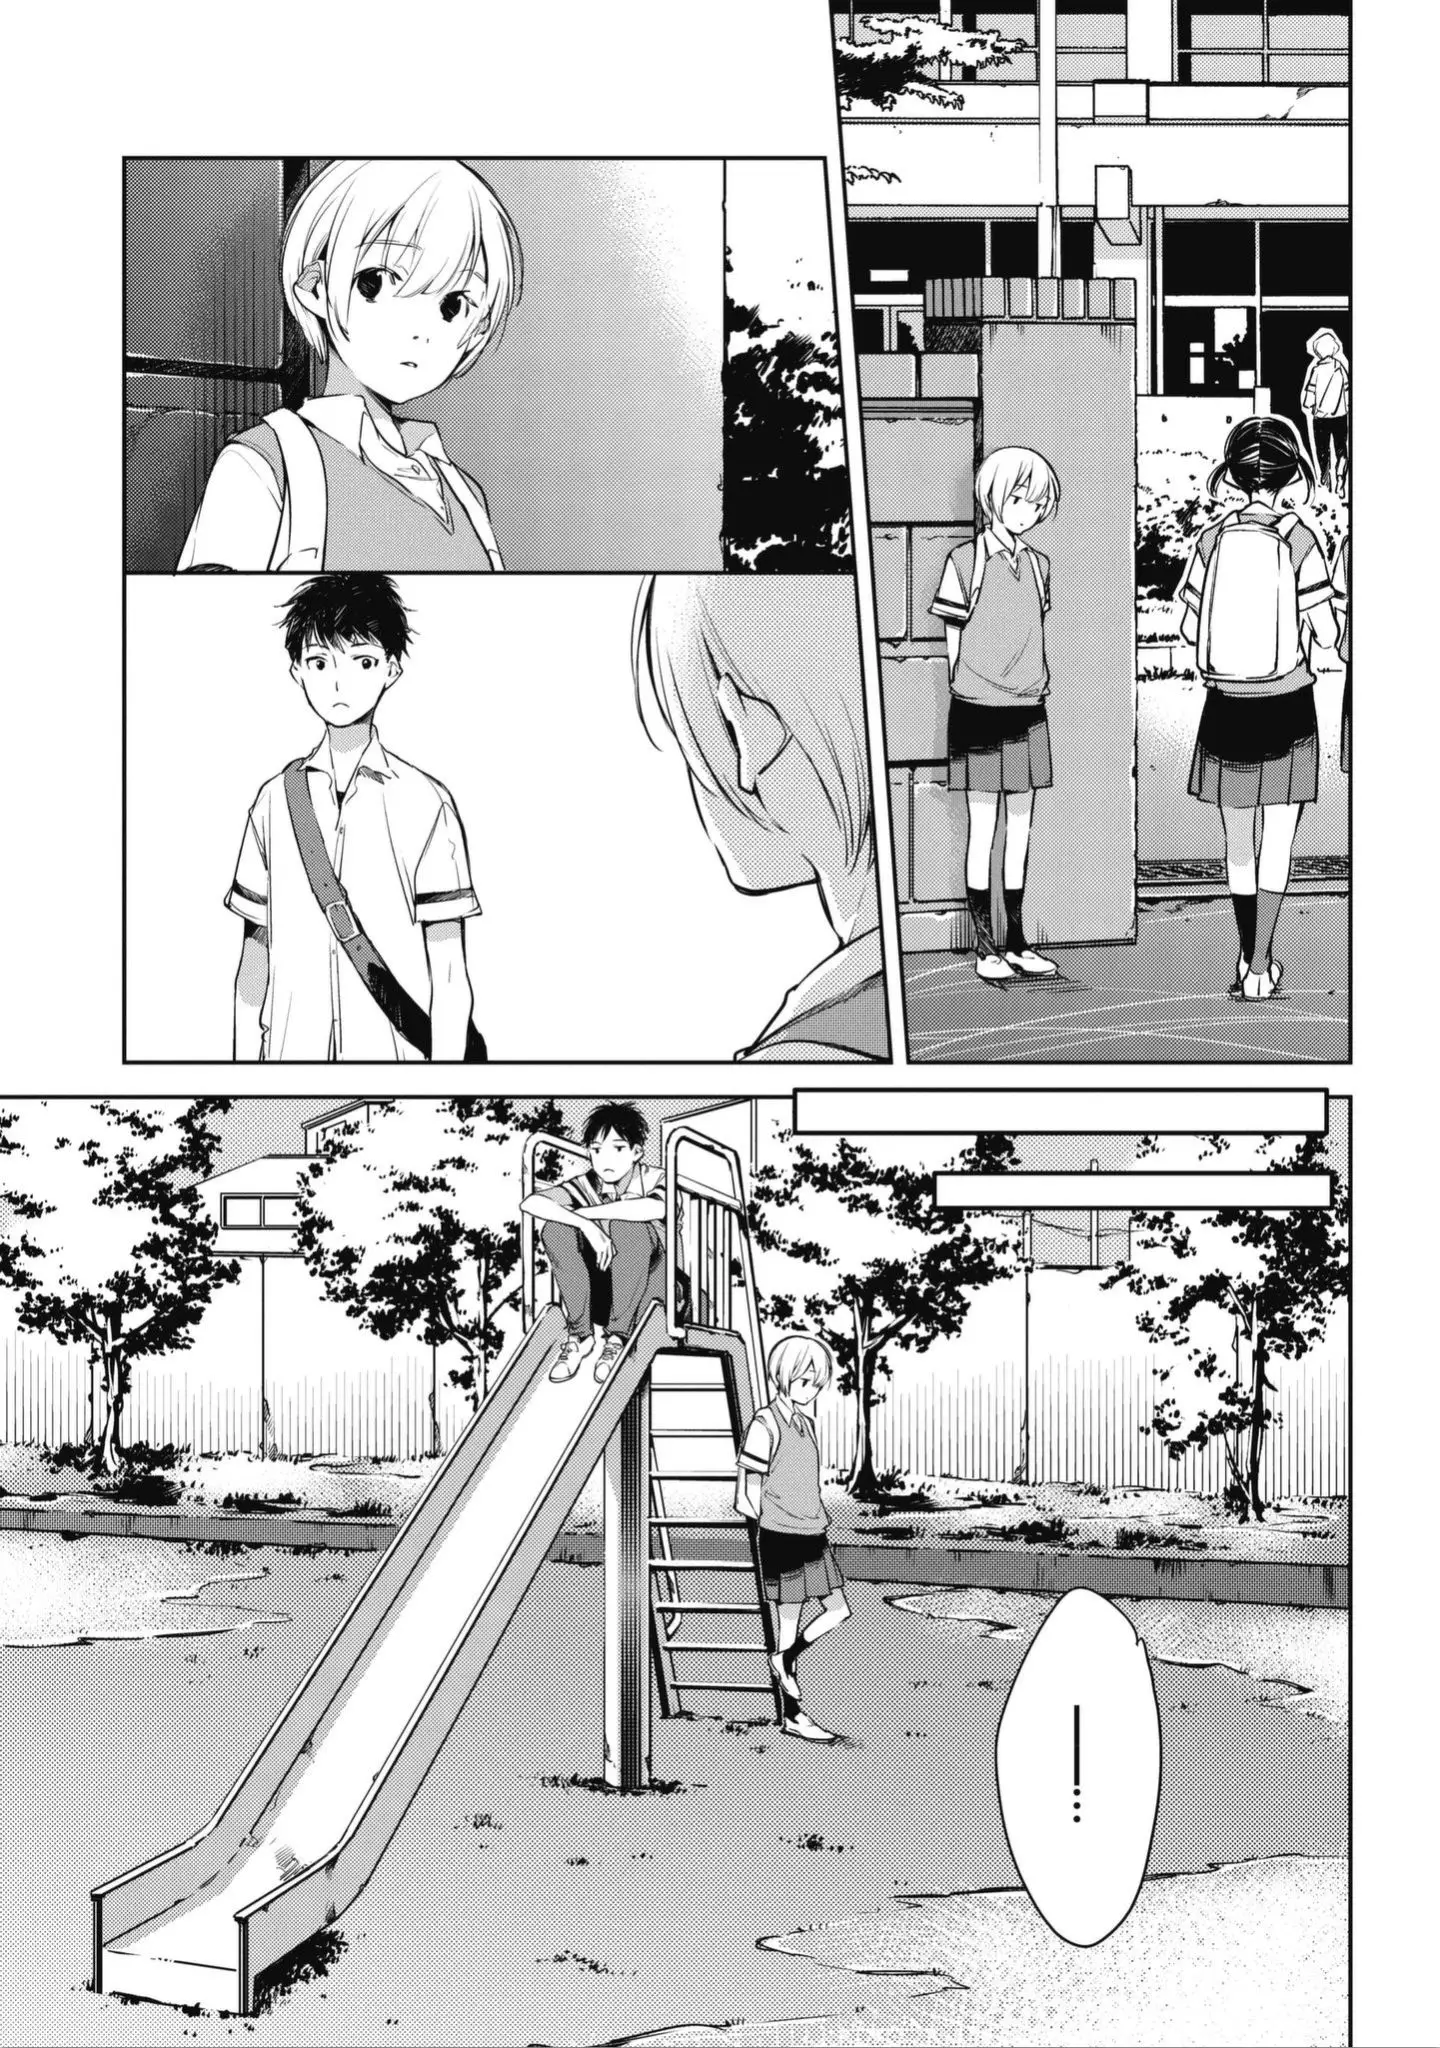 Okashiratsuki - 1 page 35